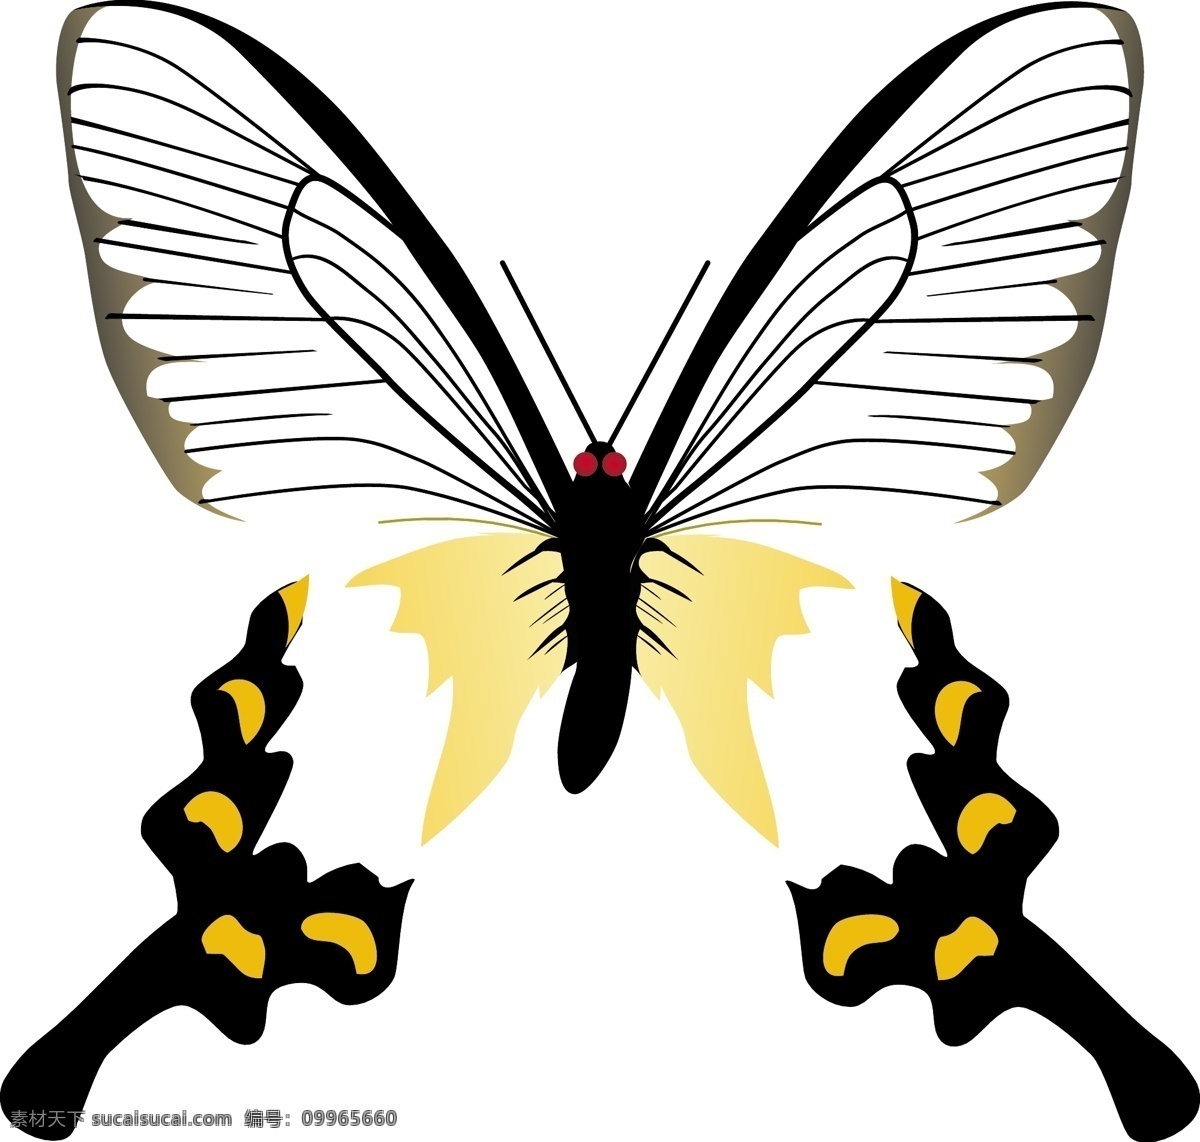 蝴蝶 昆虫 缤纷彩蝶 矢量动物 卡通动物 格式 ai格式 设计素材 昆虫世界 矢量图库 白色